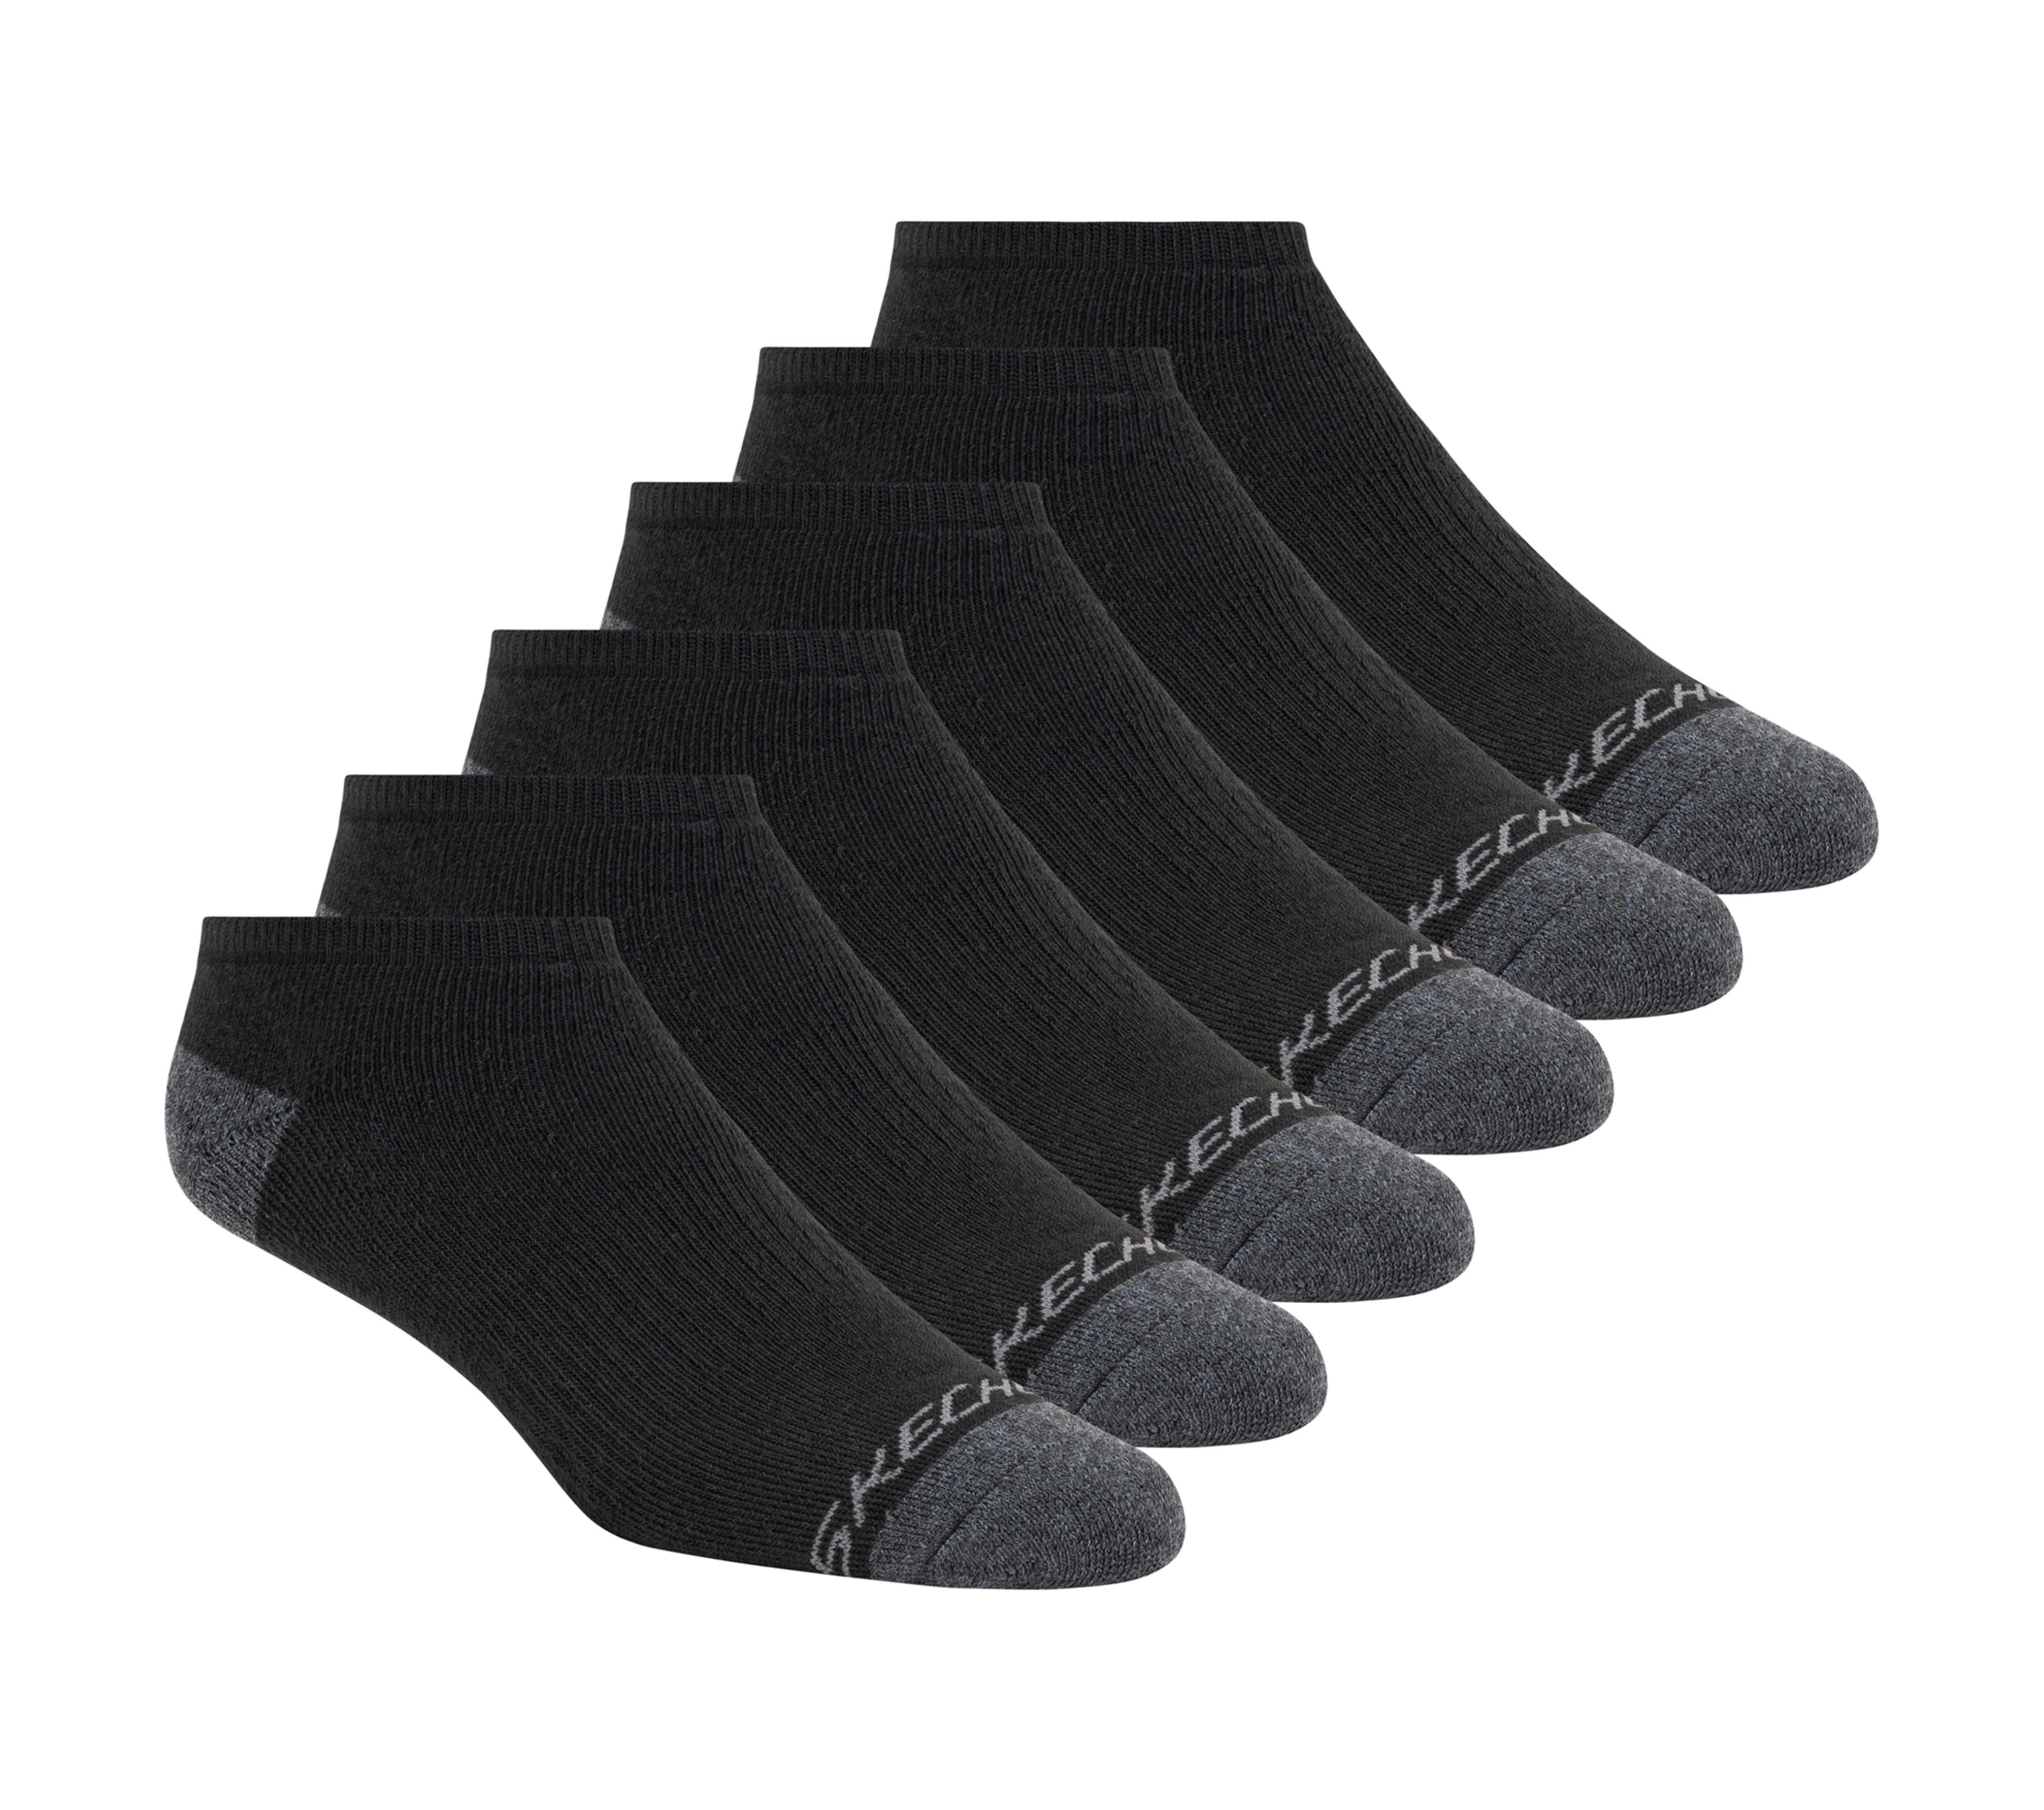 Skechers Women's 6 Pack Low Cut Walking Socks Size Medium Black Poly Blend